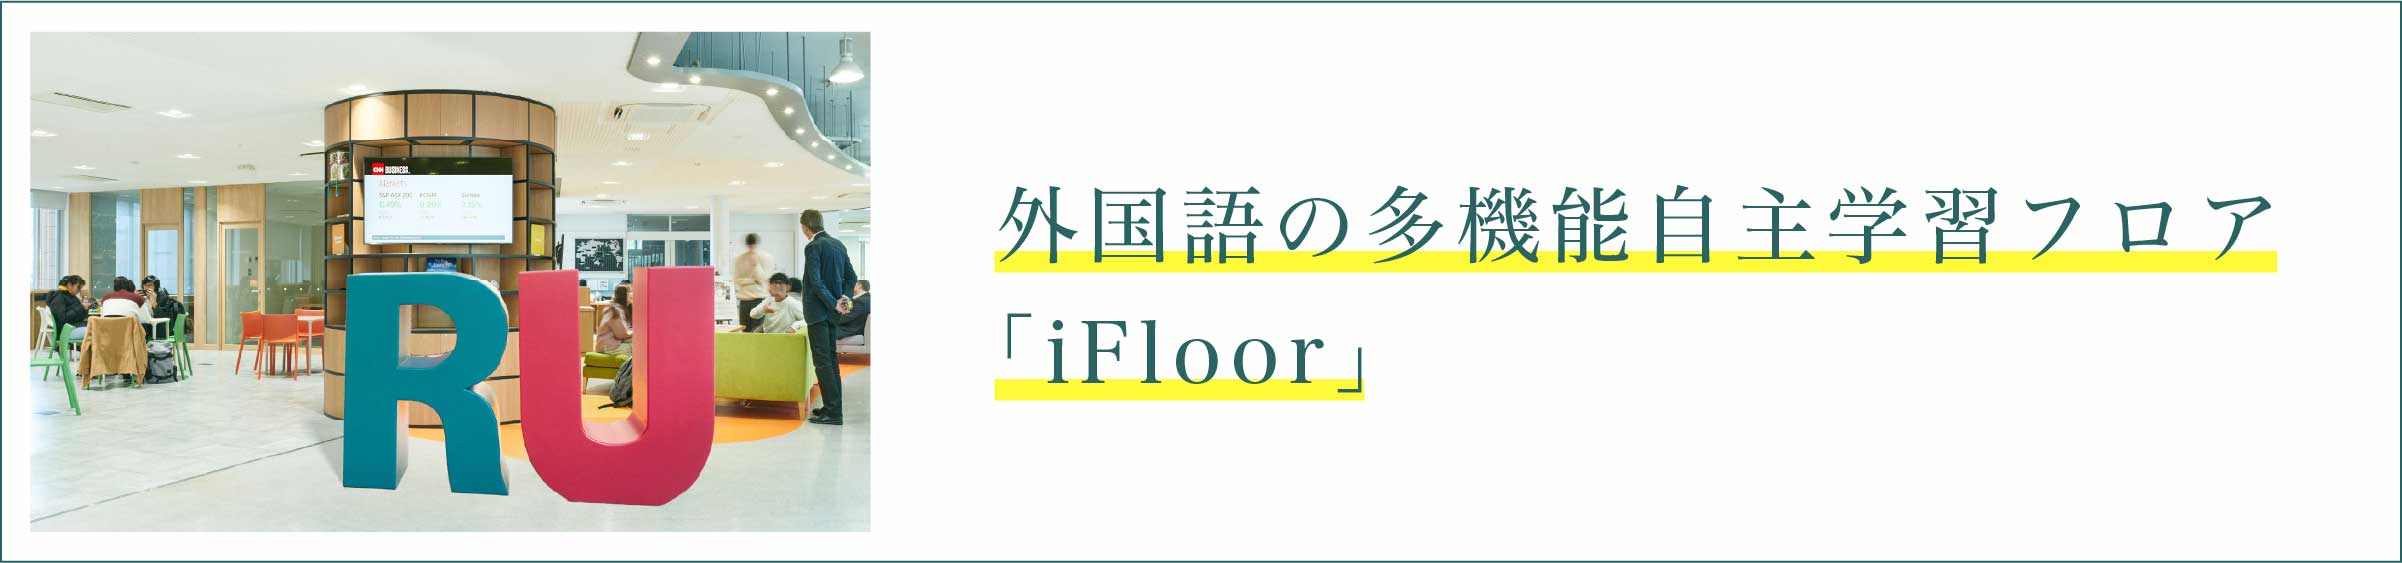 外国語の多機能自主学習フロア「iFloor」